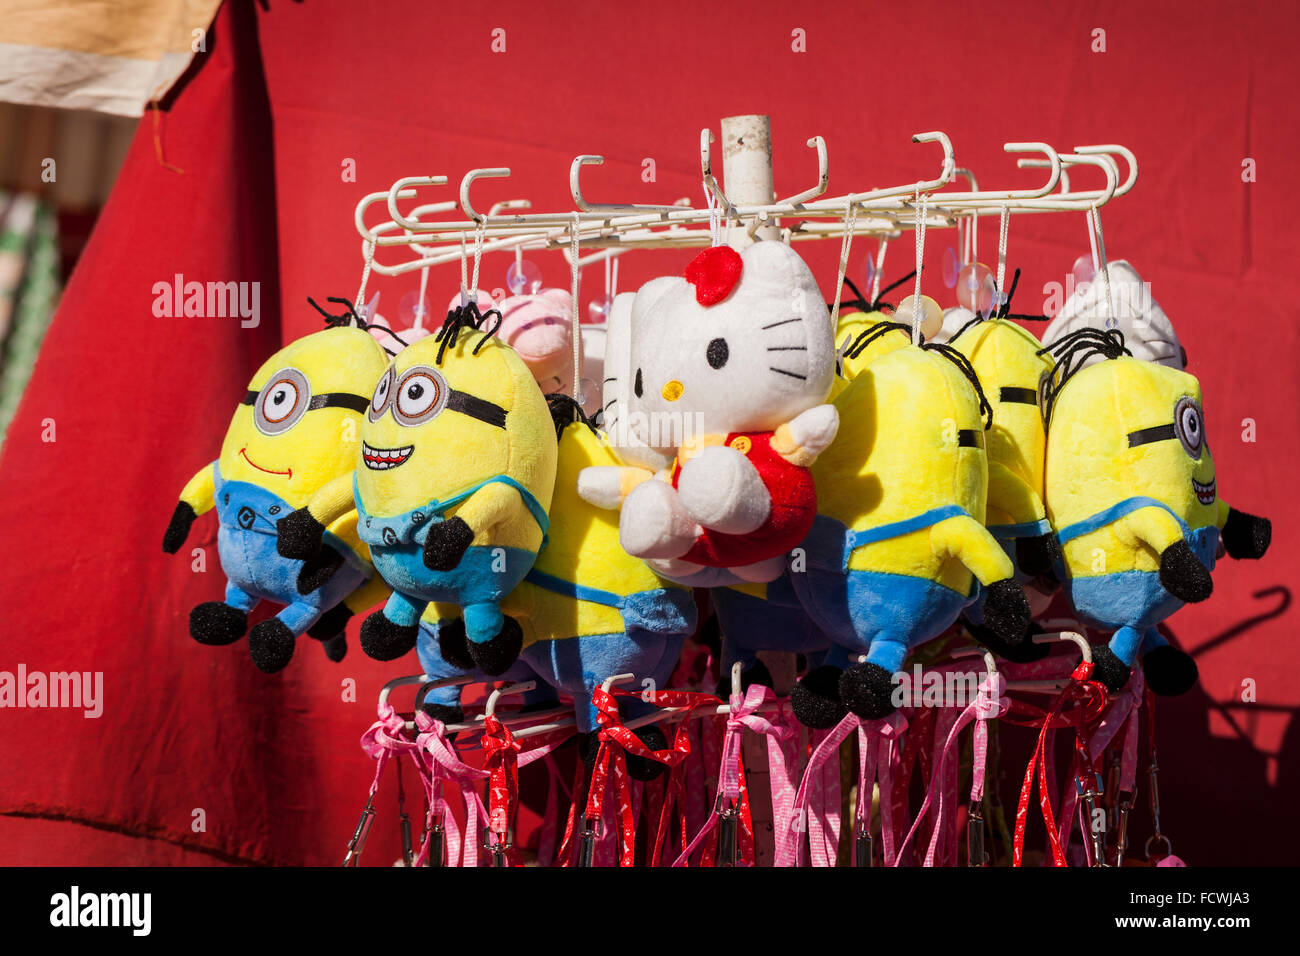 Fluffy toy larbins sur un rack pour vente à la Fiesta San Sebastian, La Caleta, Costa Adeje, Tenerife, Canaries, Espagne. Banque D'Images